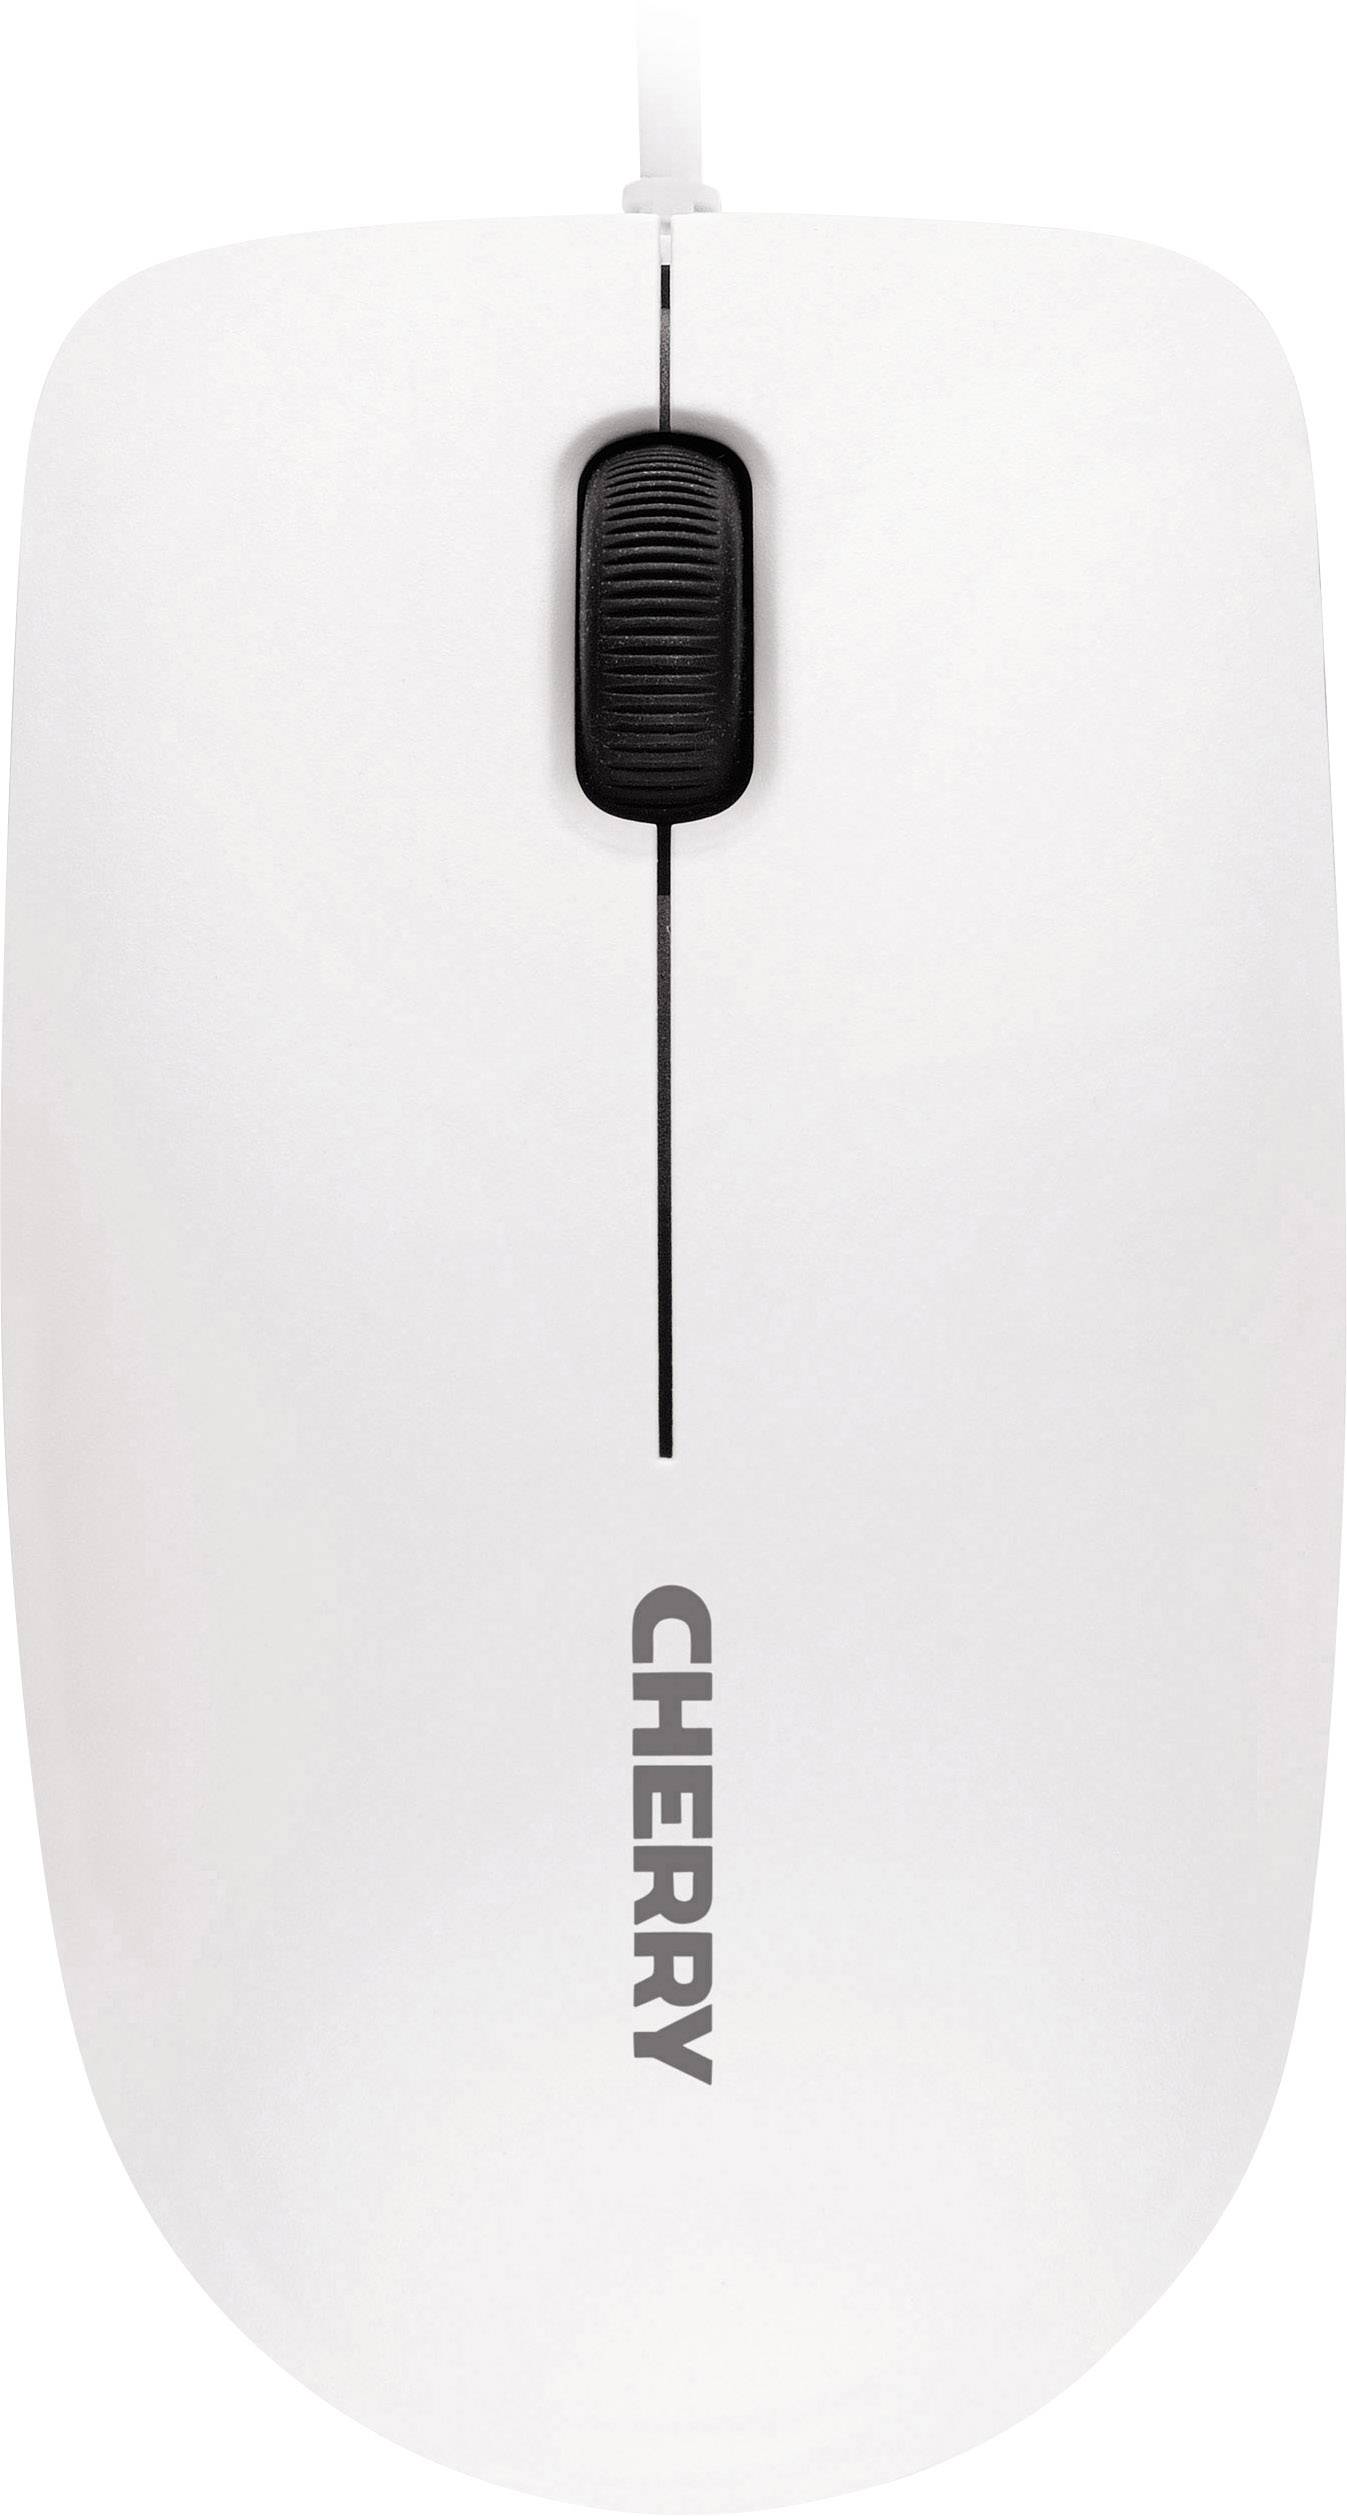 CHERRY MC 1000 Maus USB Optisch Weiß, Grau 3 Tasten 1200 dpi kaufen